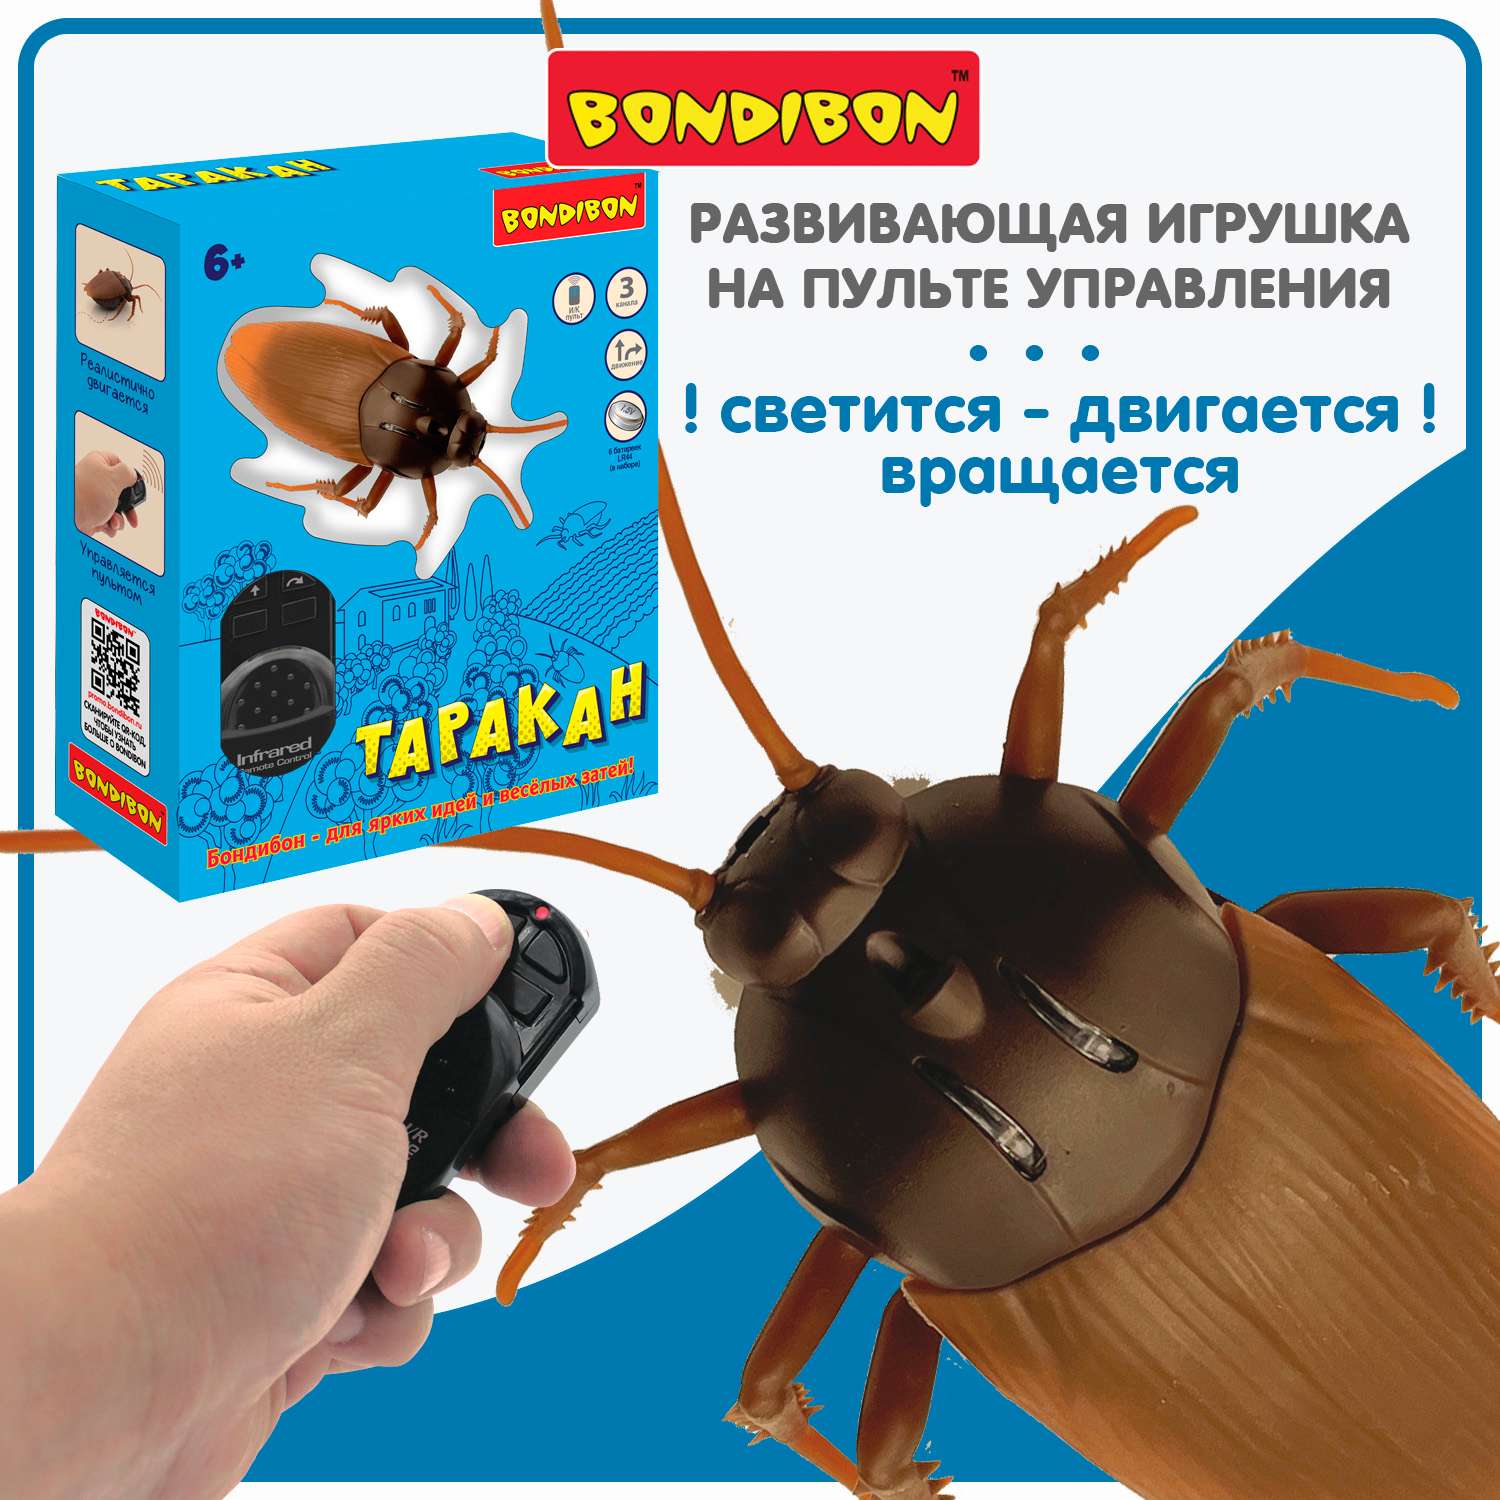 Игрушка на пульте управления BONDIBON Таракан со световыми эффектами на батарейках демо режим - фото 1